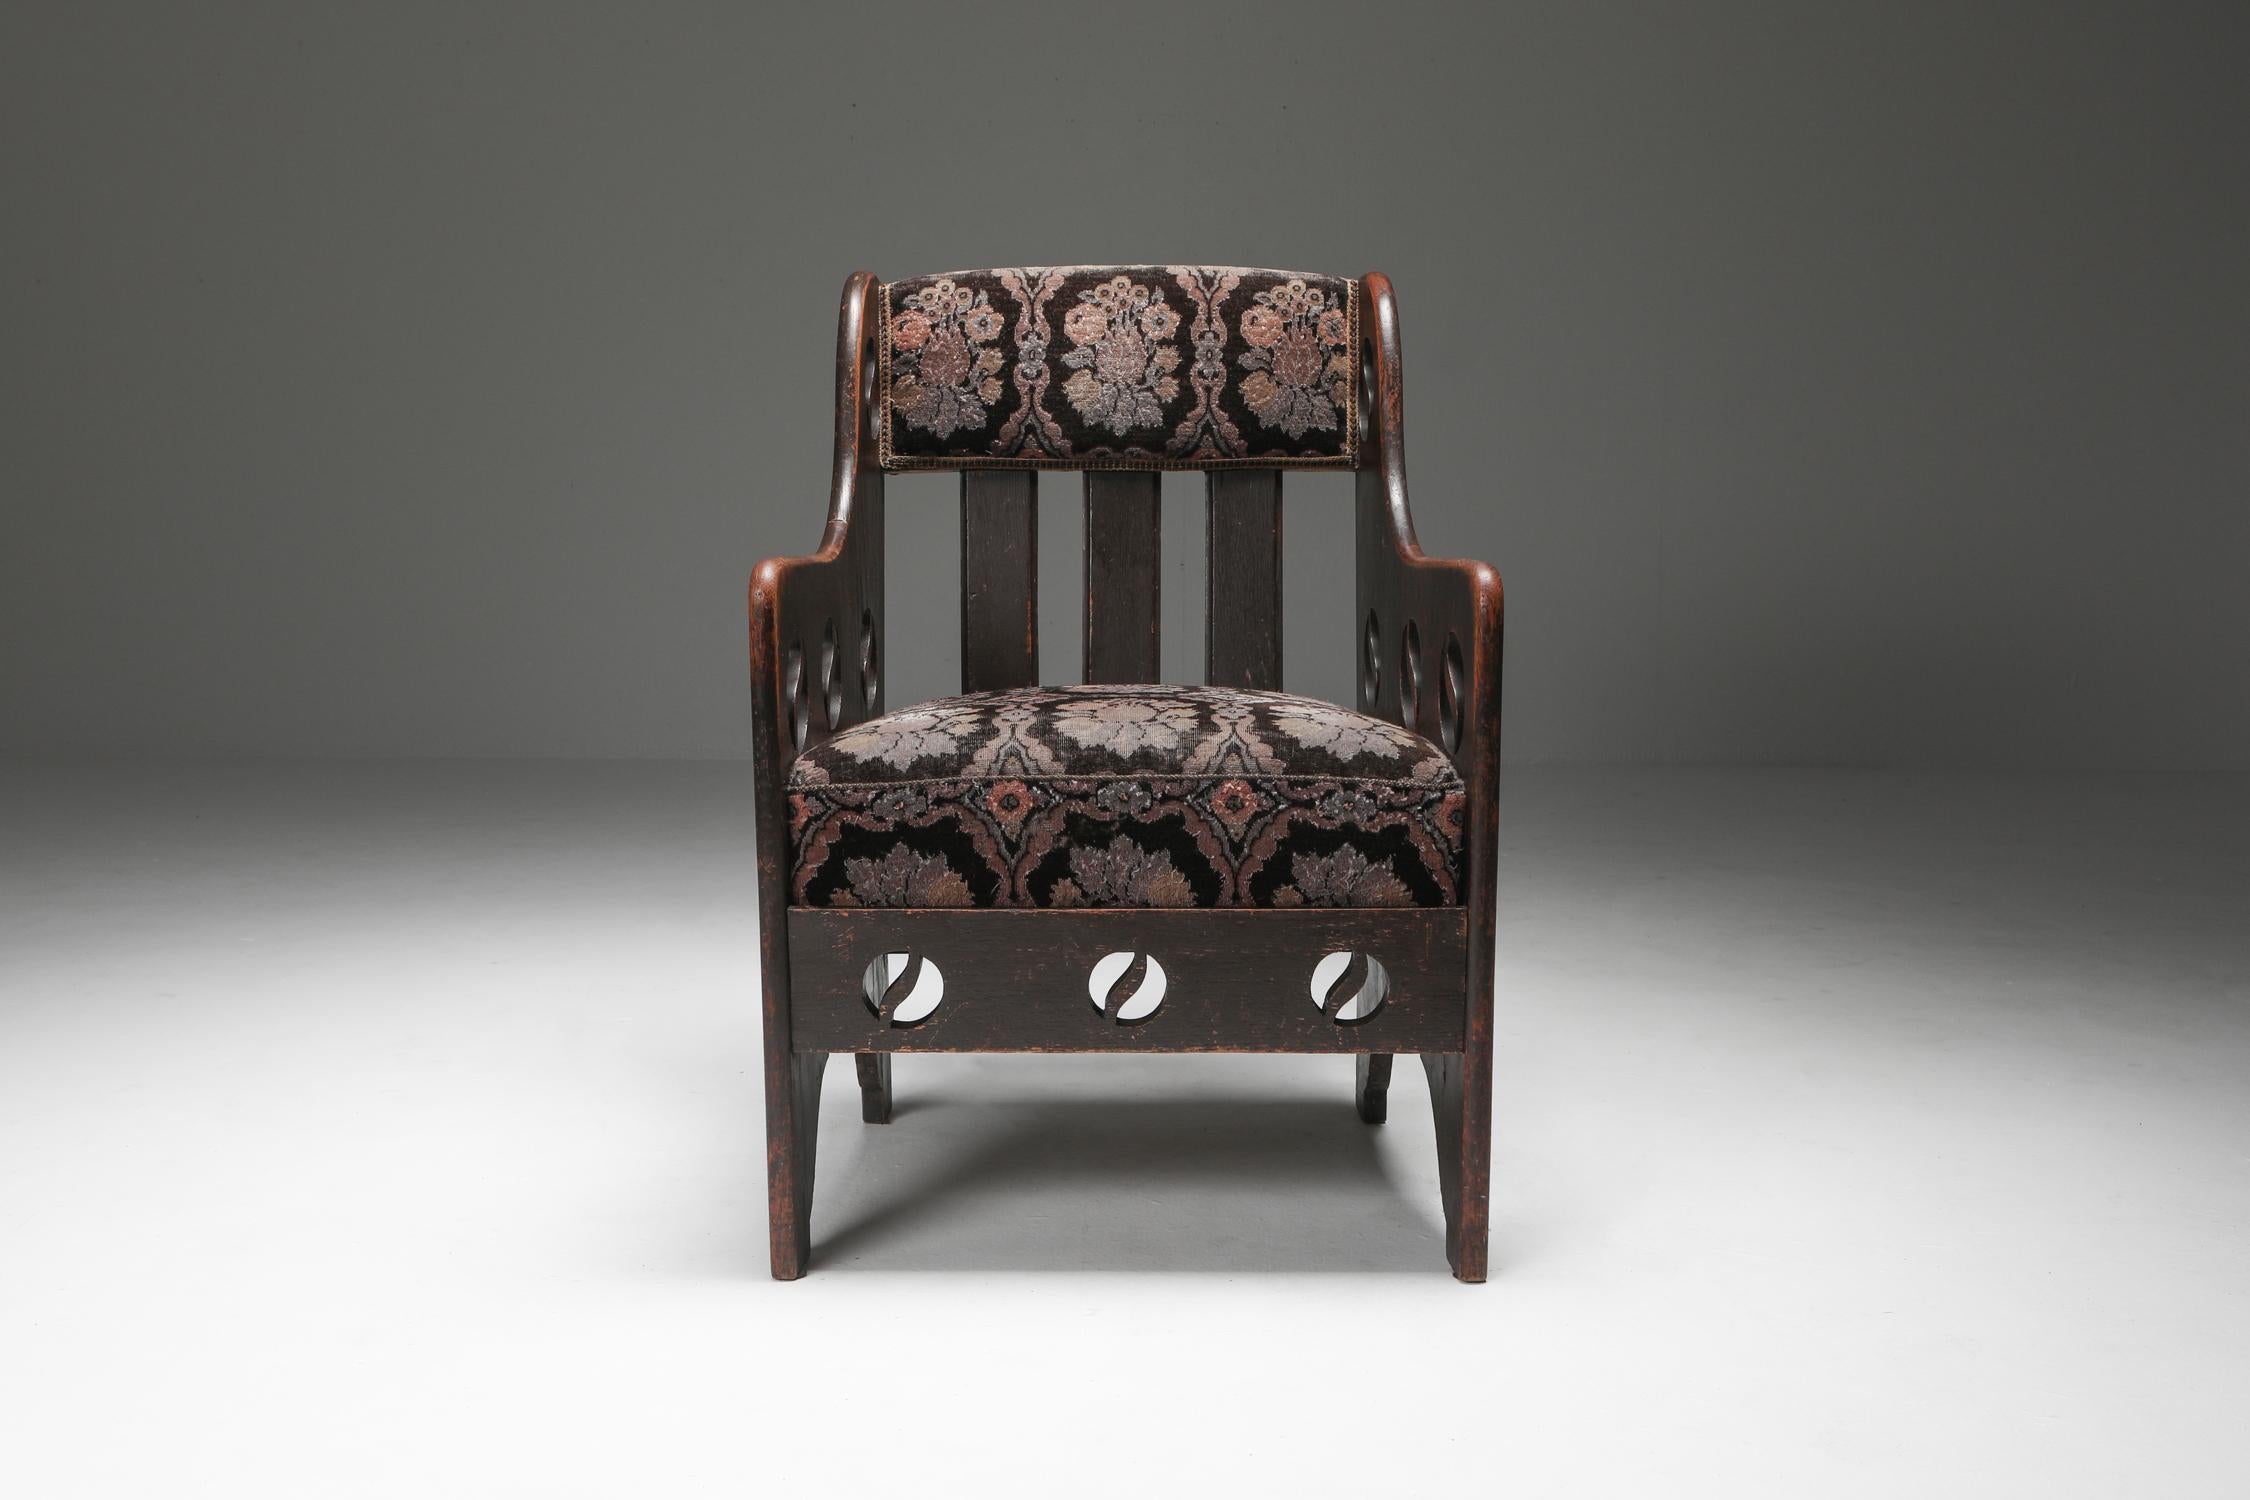 Frühmoderner Sessel aus Schweden, ungefähr aus dem Jahr 1920, aus gebeizter Eiche gefertigt und im Originalzustand erhalten. Während die Polsterung Elemente des expressionistischen Designs aufweist, strahlt das Gesamtbild des Sessels eine rustikale